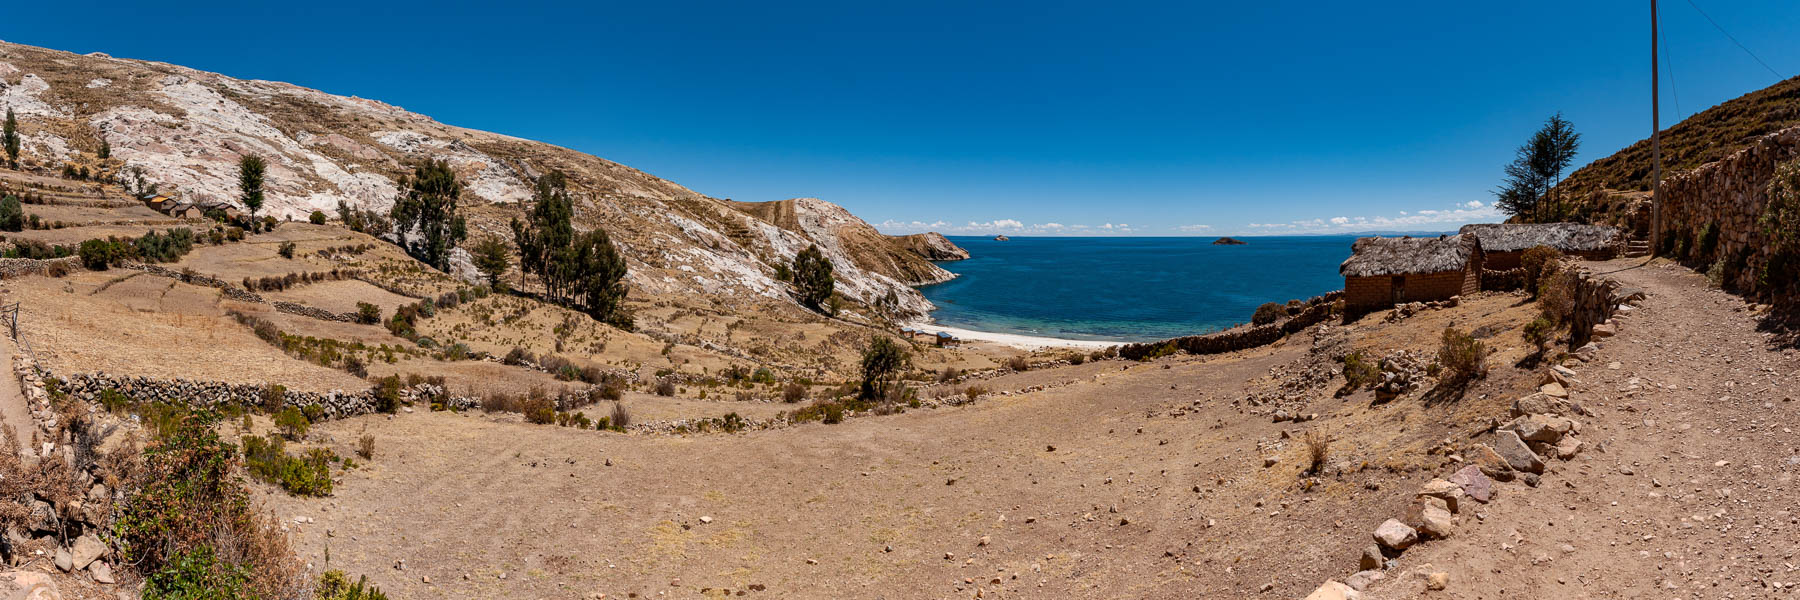 Lac Titicaca : île du Soleil, plage